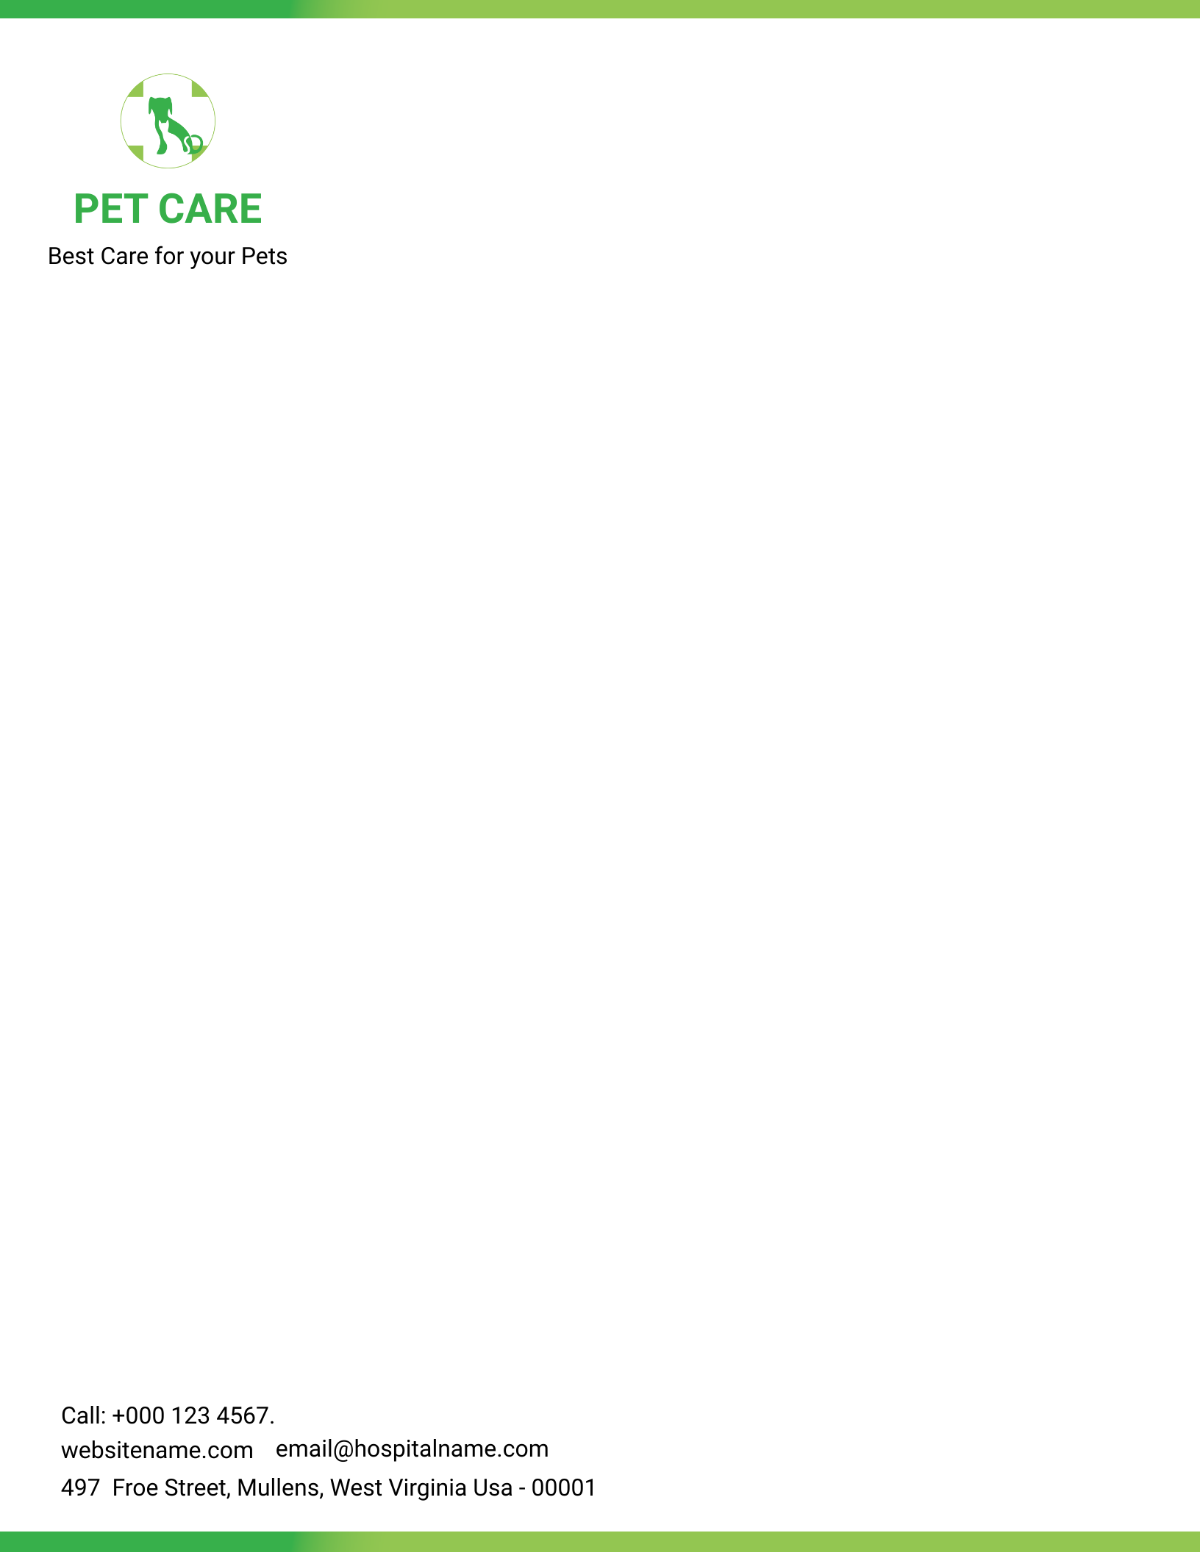 Pet Care Letterhead Template